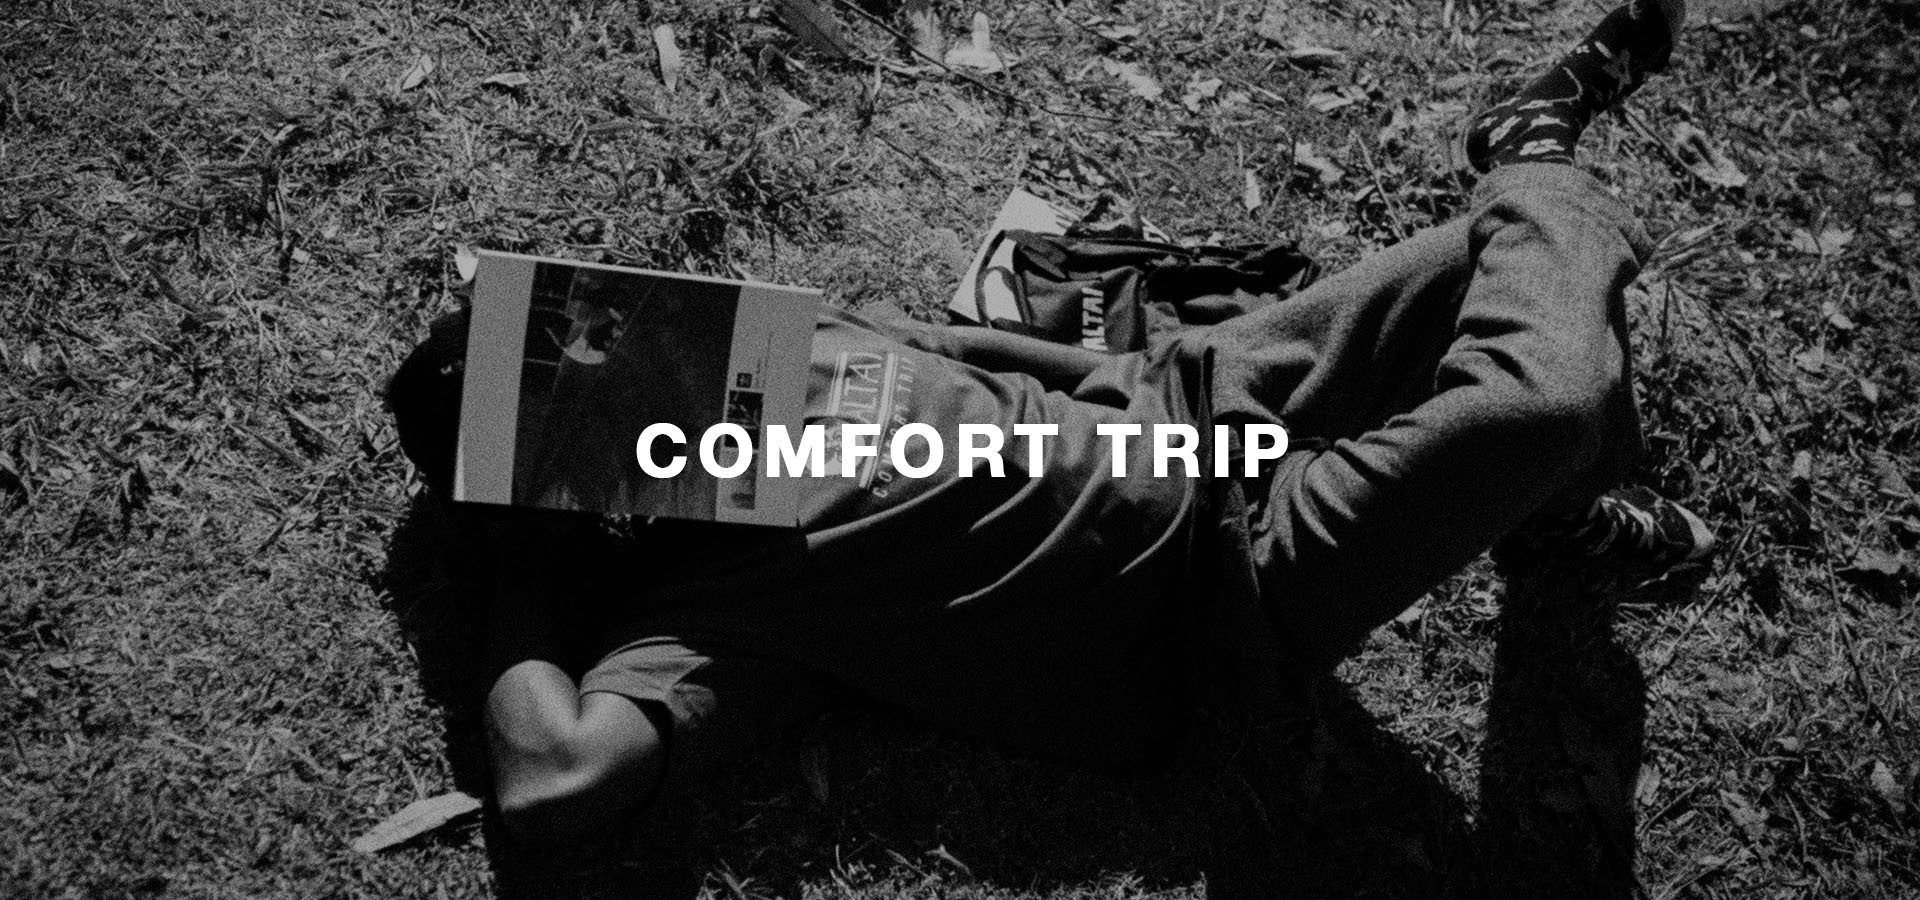 [Campanha] Fullbanner - Comfort Trip